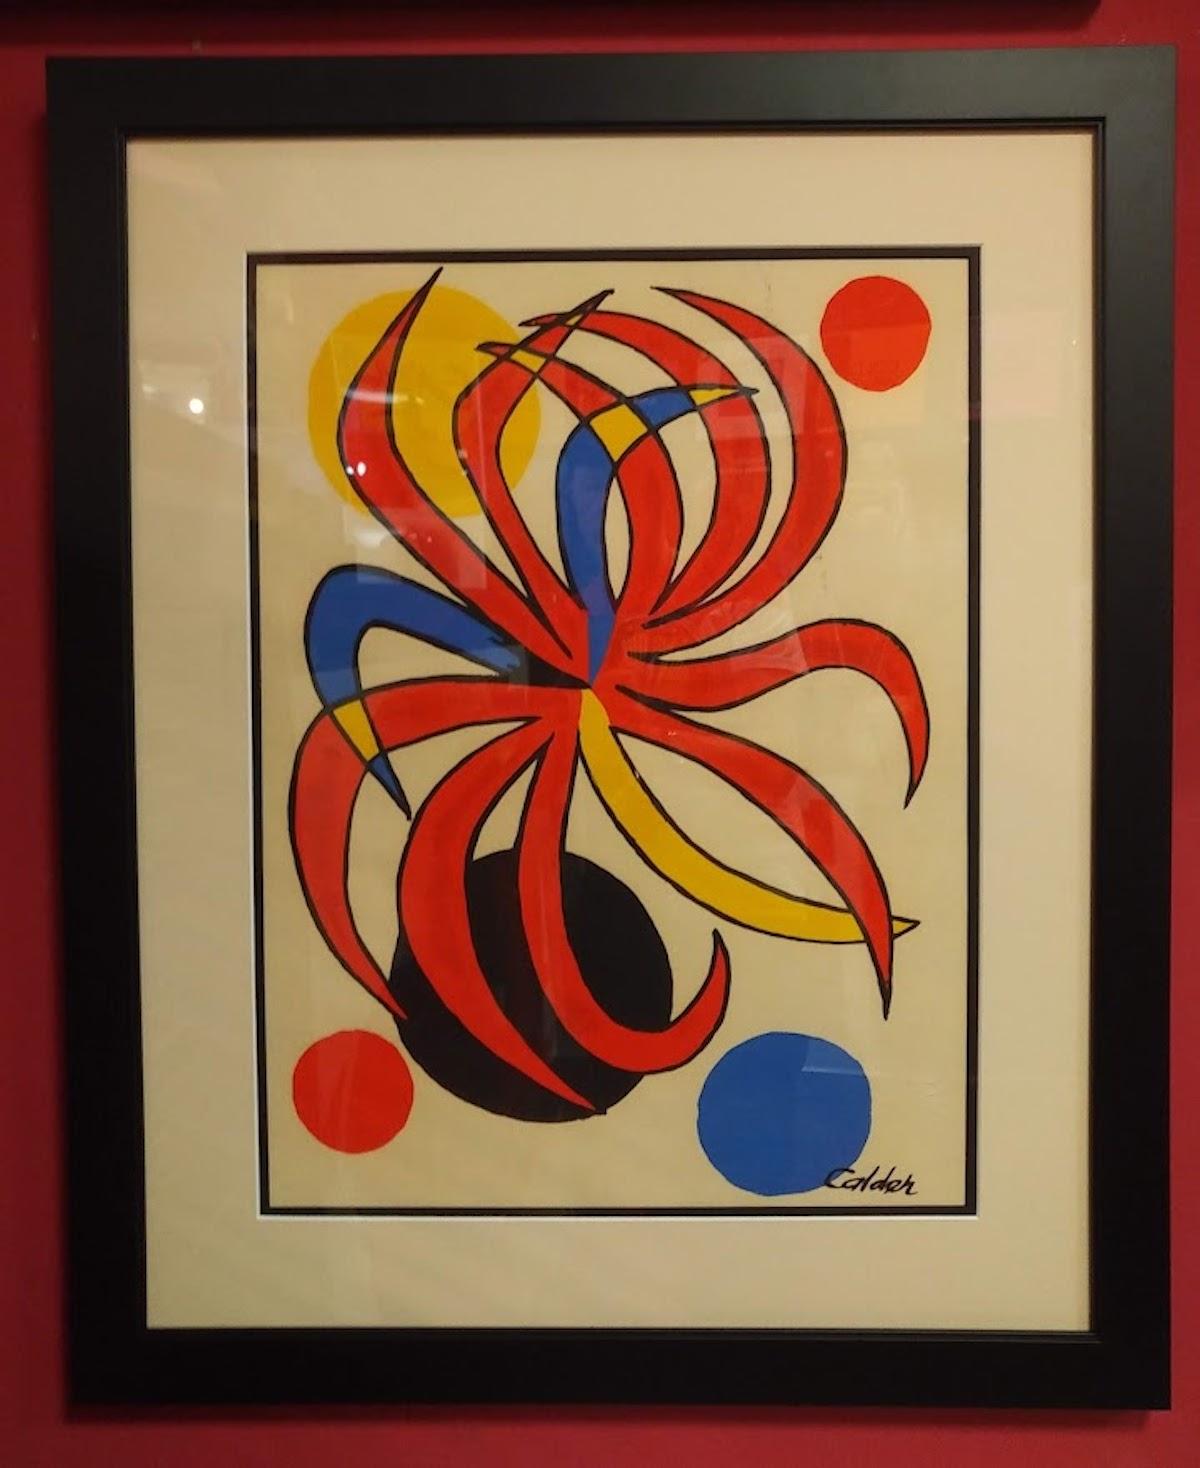 Alexander Calder:: Fleur rouge 
Lithographie sur papier des années 1970. 
Signé sur la plaque en bas à droite. 
Une lithographie d'Alexander Calder. 
Llithographie imprimée en couleurs sur papier
Signé avec le nom de l'artiste imprimé. 
COA original